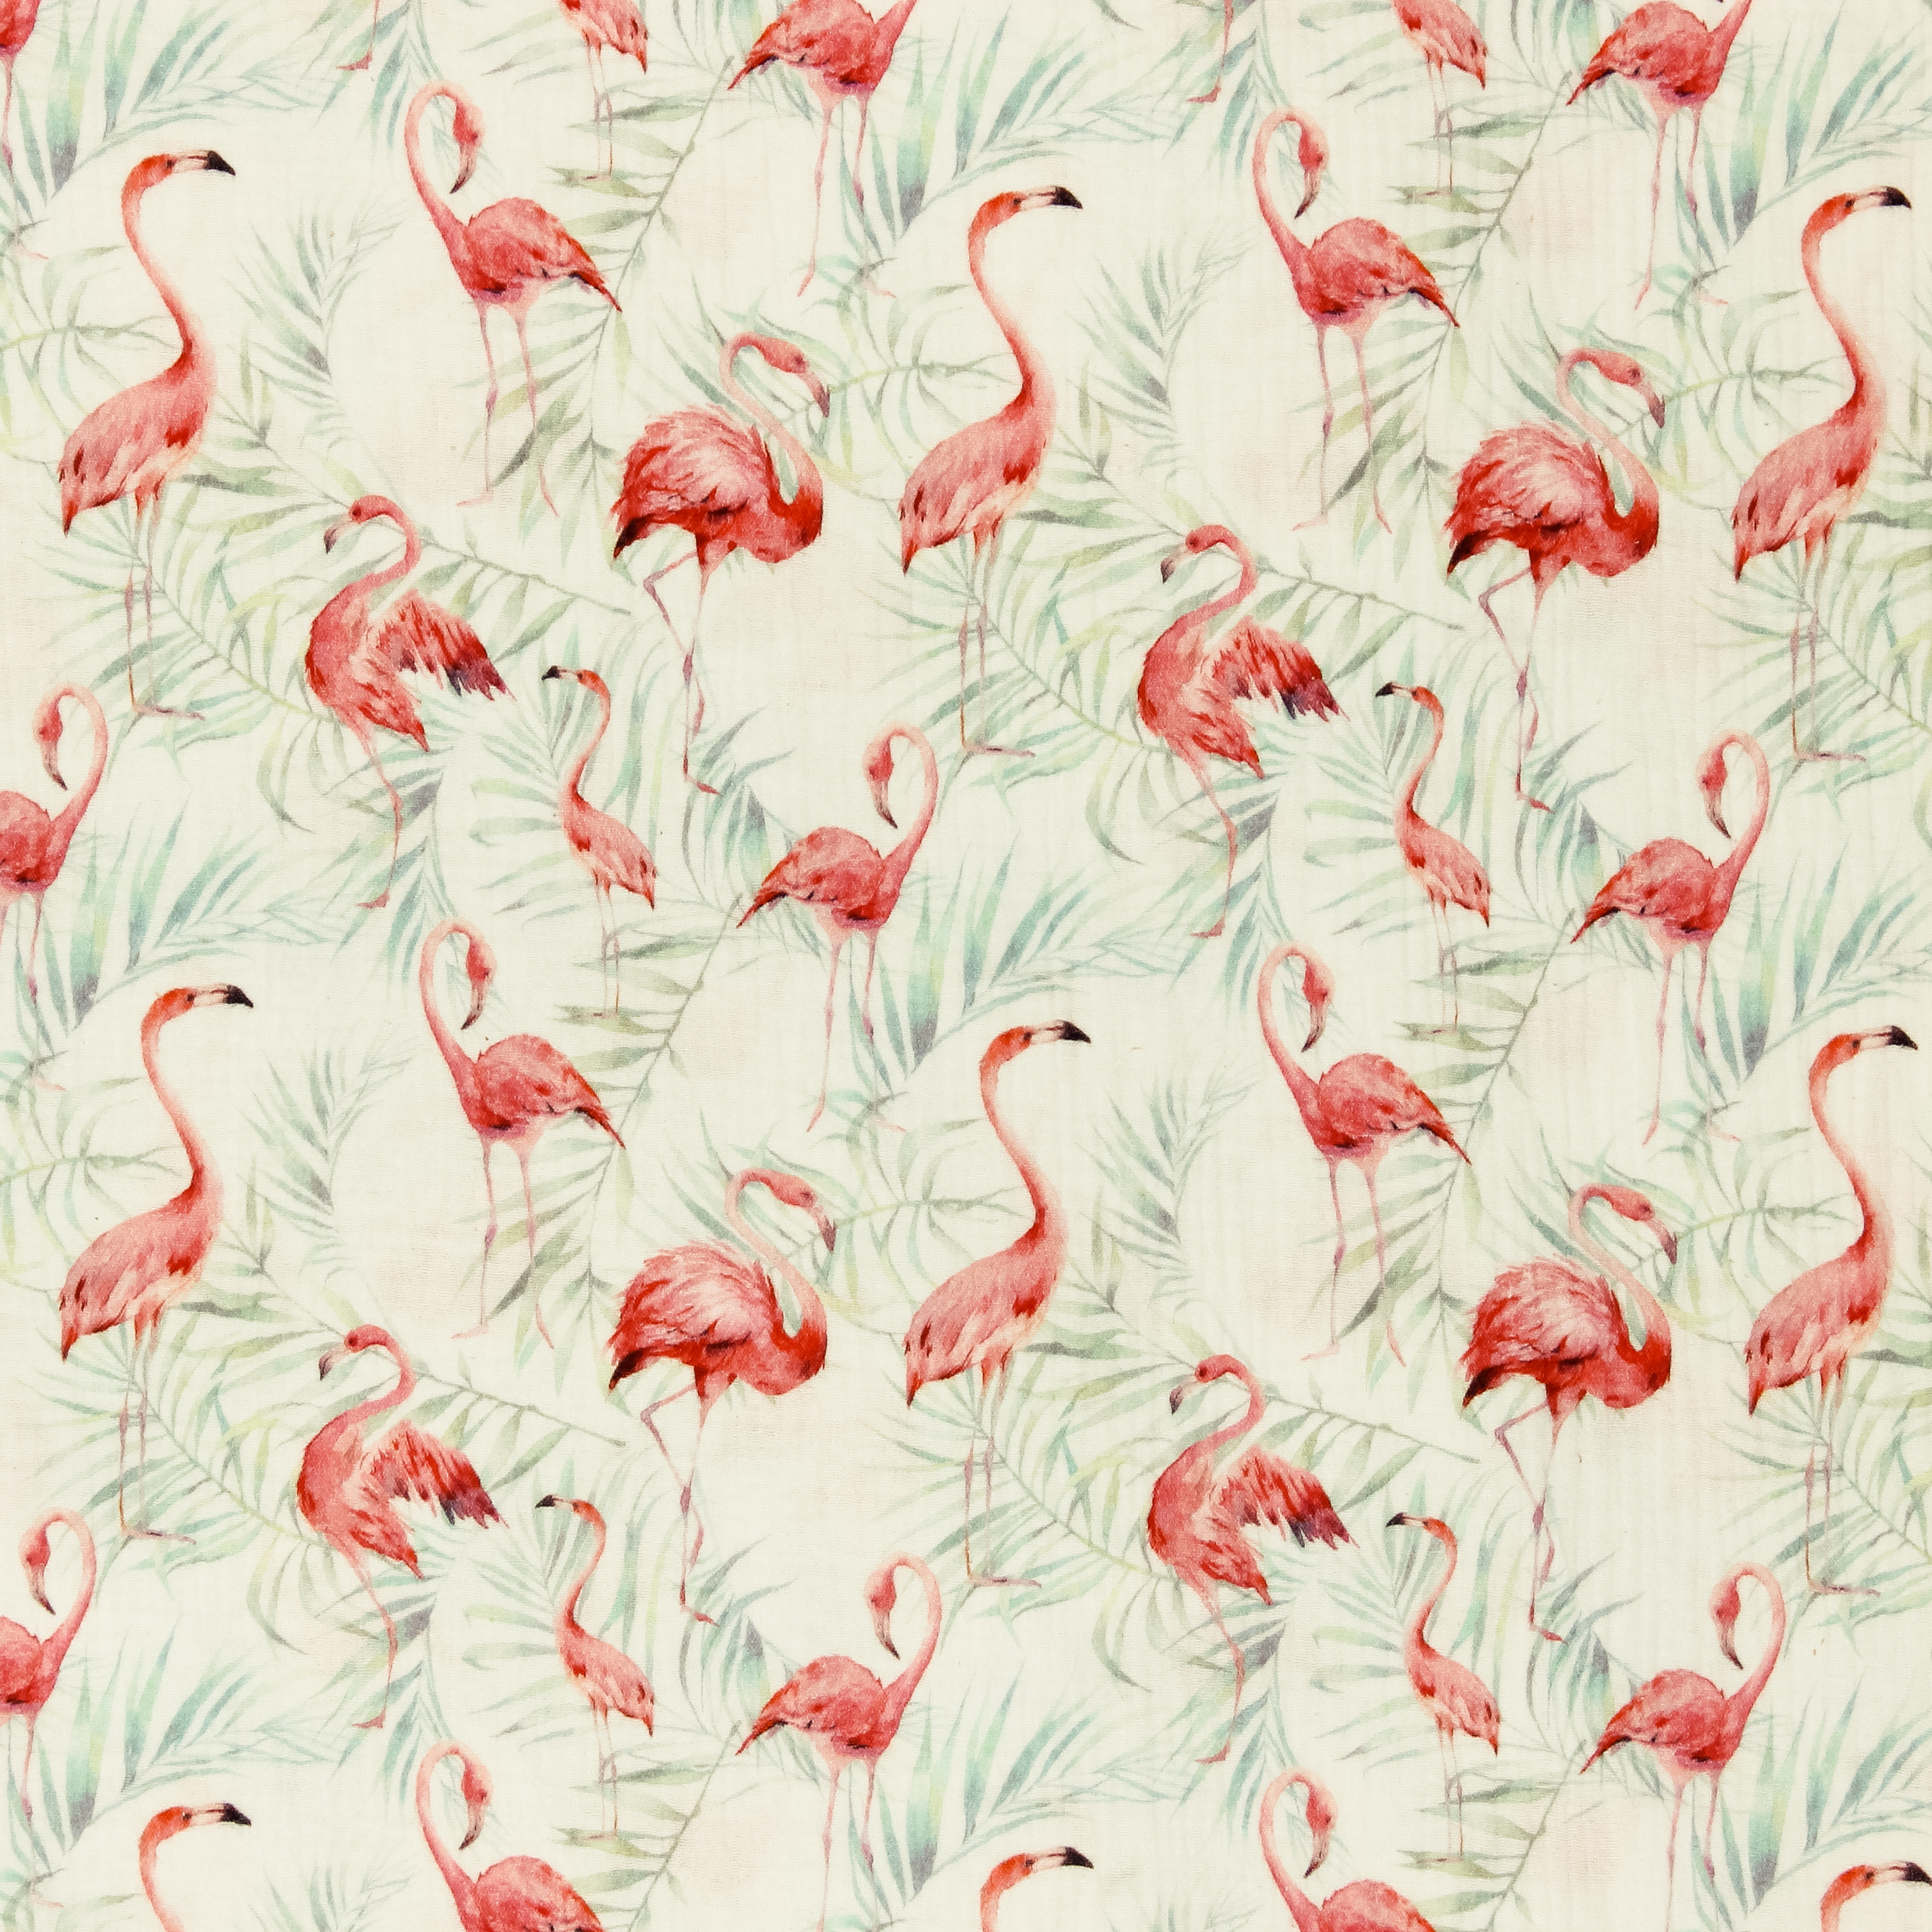 Tetra katoen wit met flamingo's